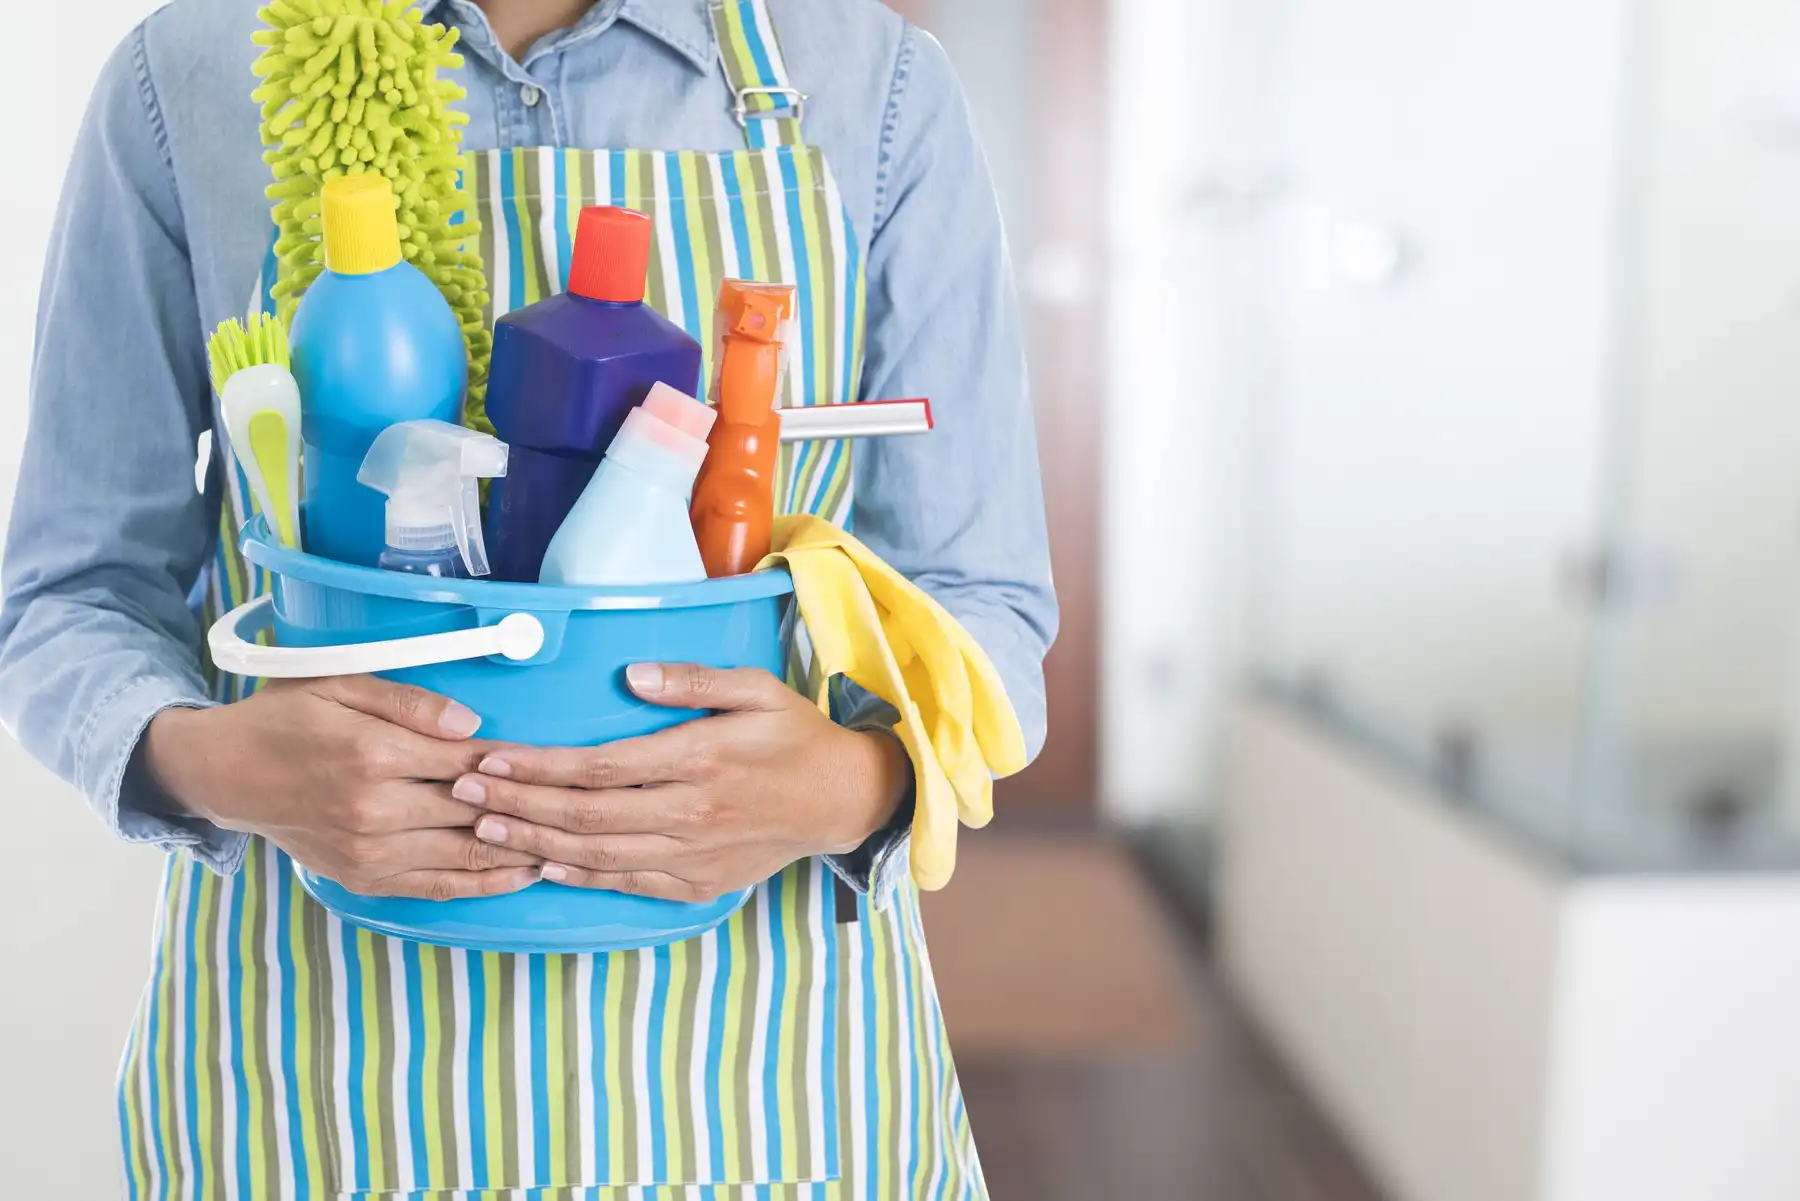 hình ảnh một người ôm chậu để các chất tẩy rửa chuyên dụng khi dọn dẹp nhà cửa 